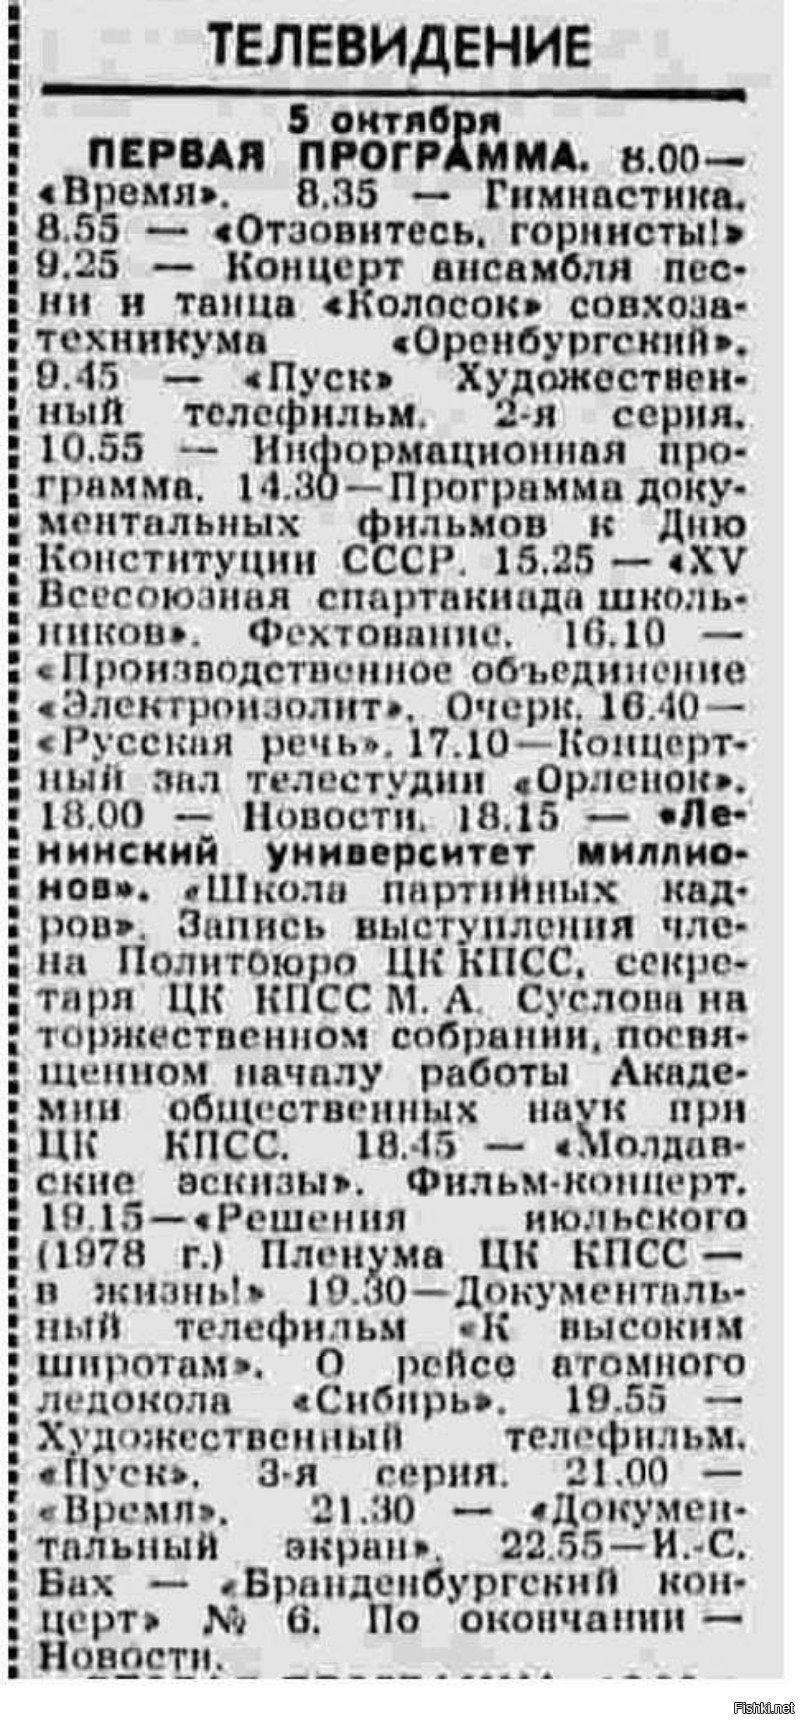 Программа передач телевидения СССР на 5 октября 1978 года